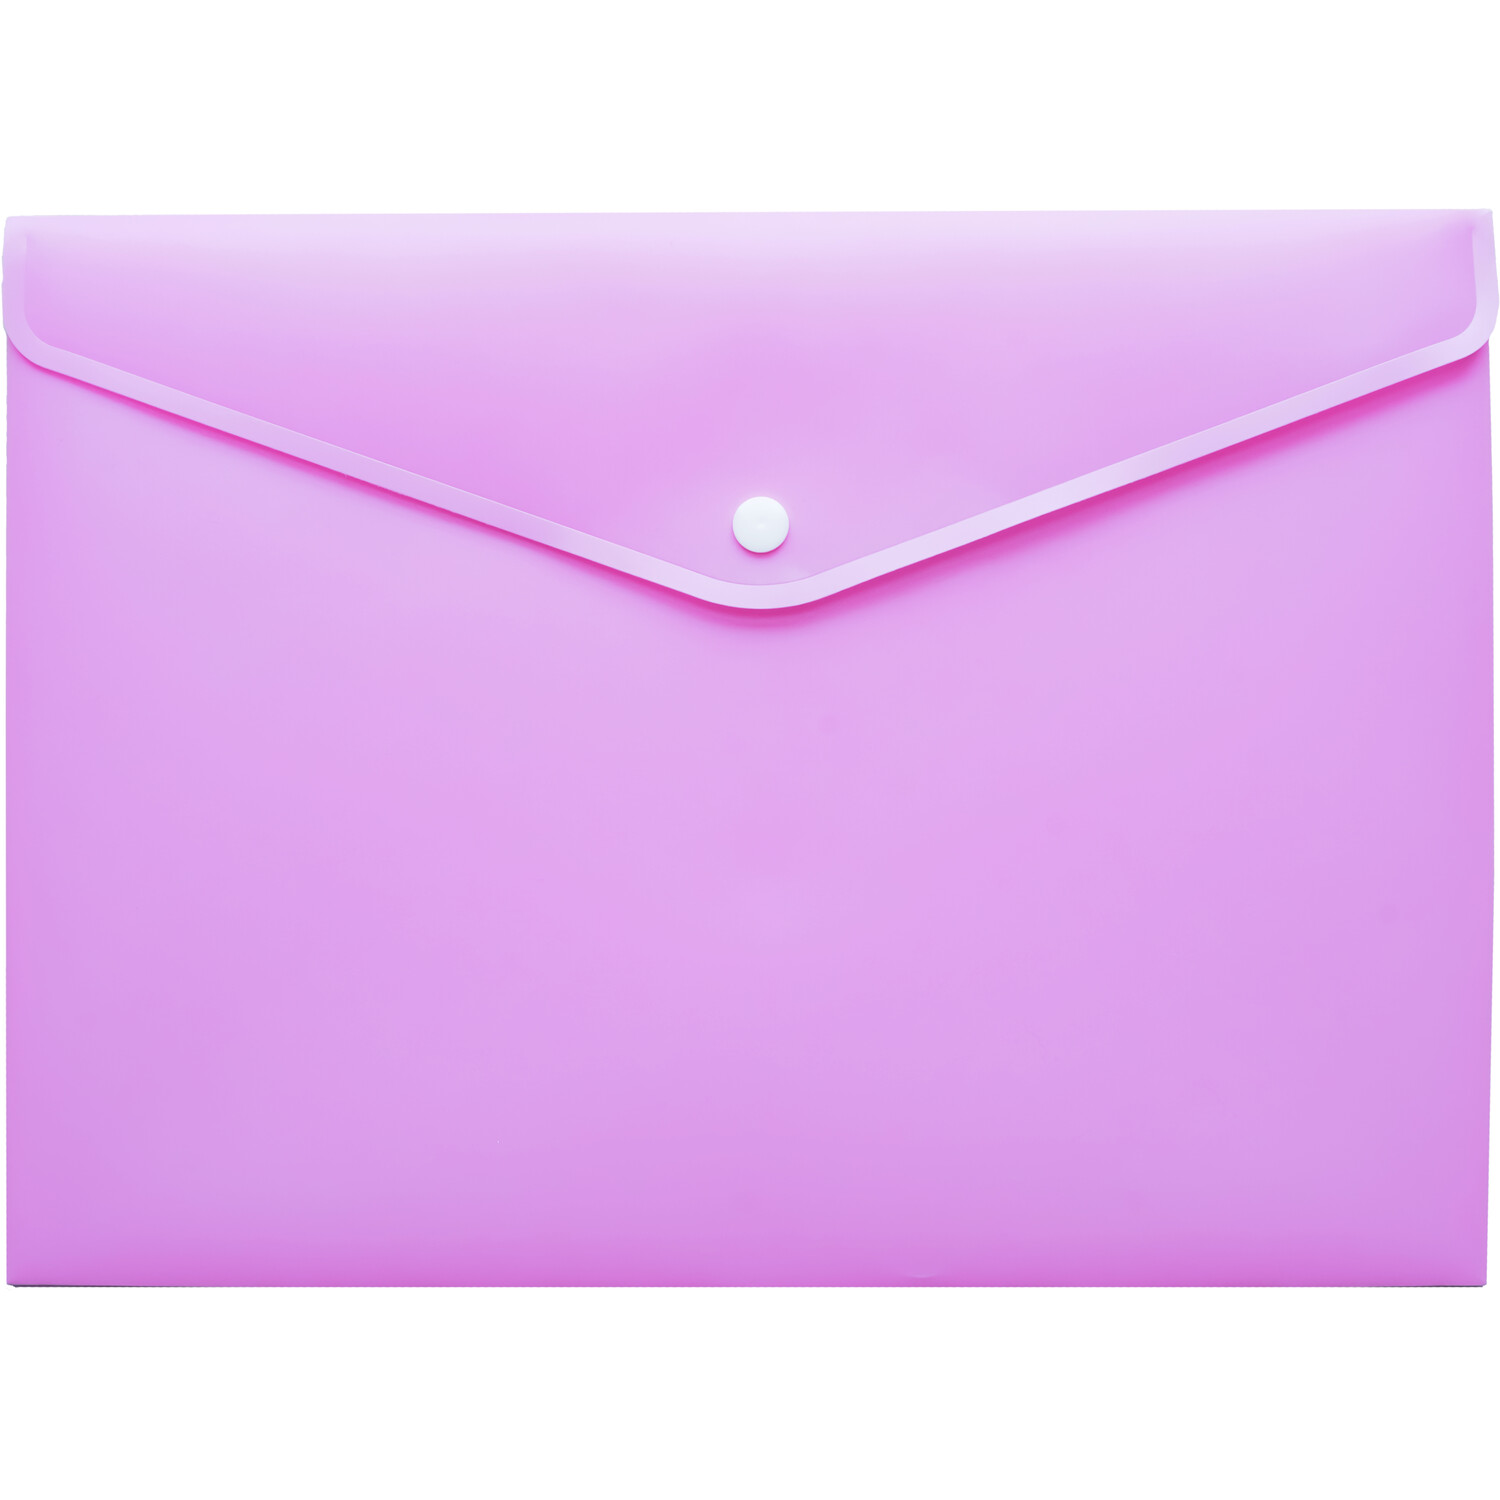 Envelop Folder Pastel Image 5